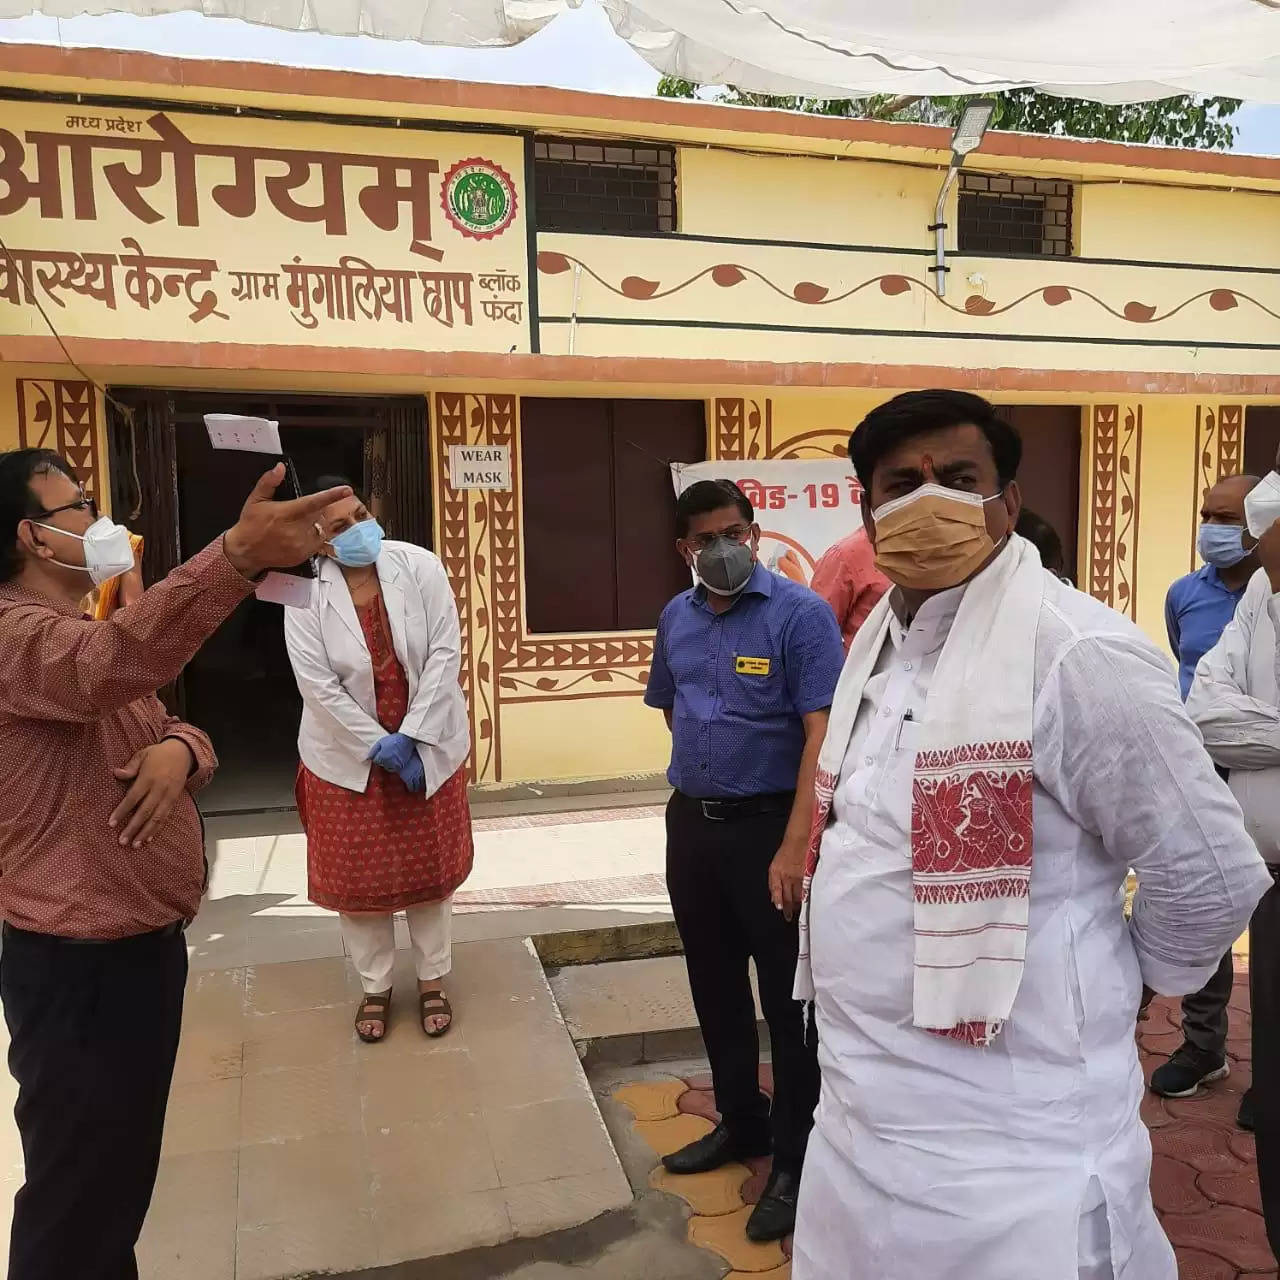 गाँवो में न बढ़े संक्रमण, विधायक रामेश्वर शर्मा स्वास्थ्य सेवाओं की समीक्षा करने पहुँचे गांव गांव